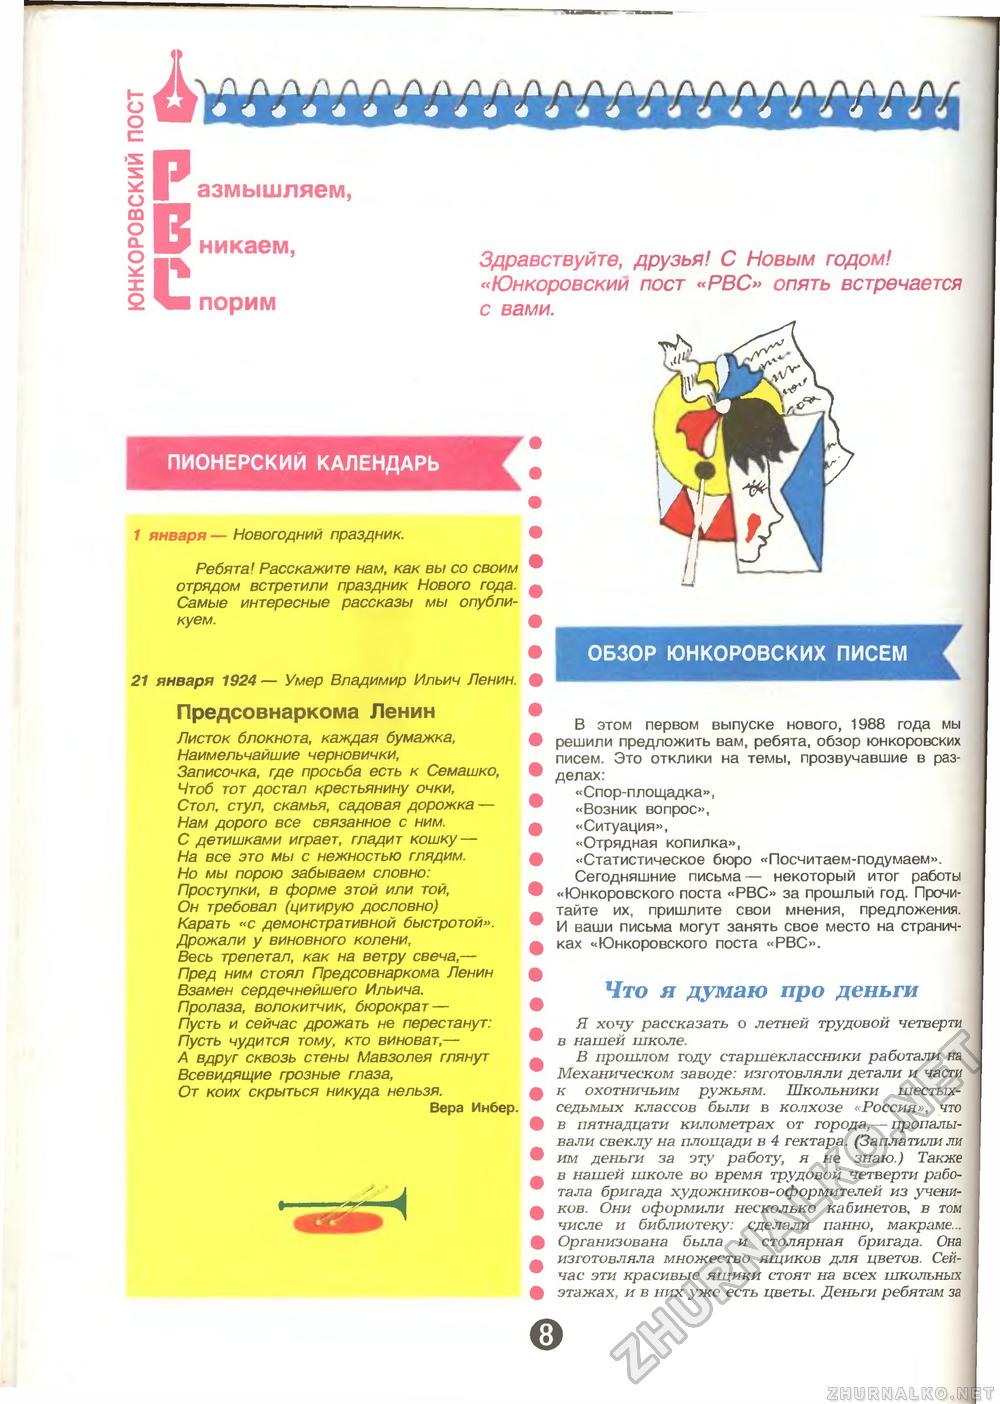  1988-01,  10